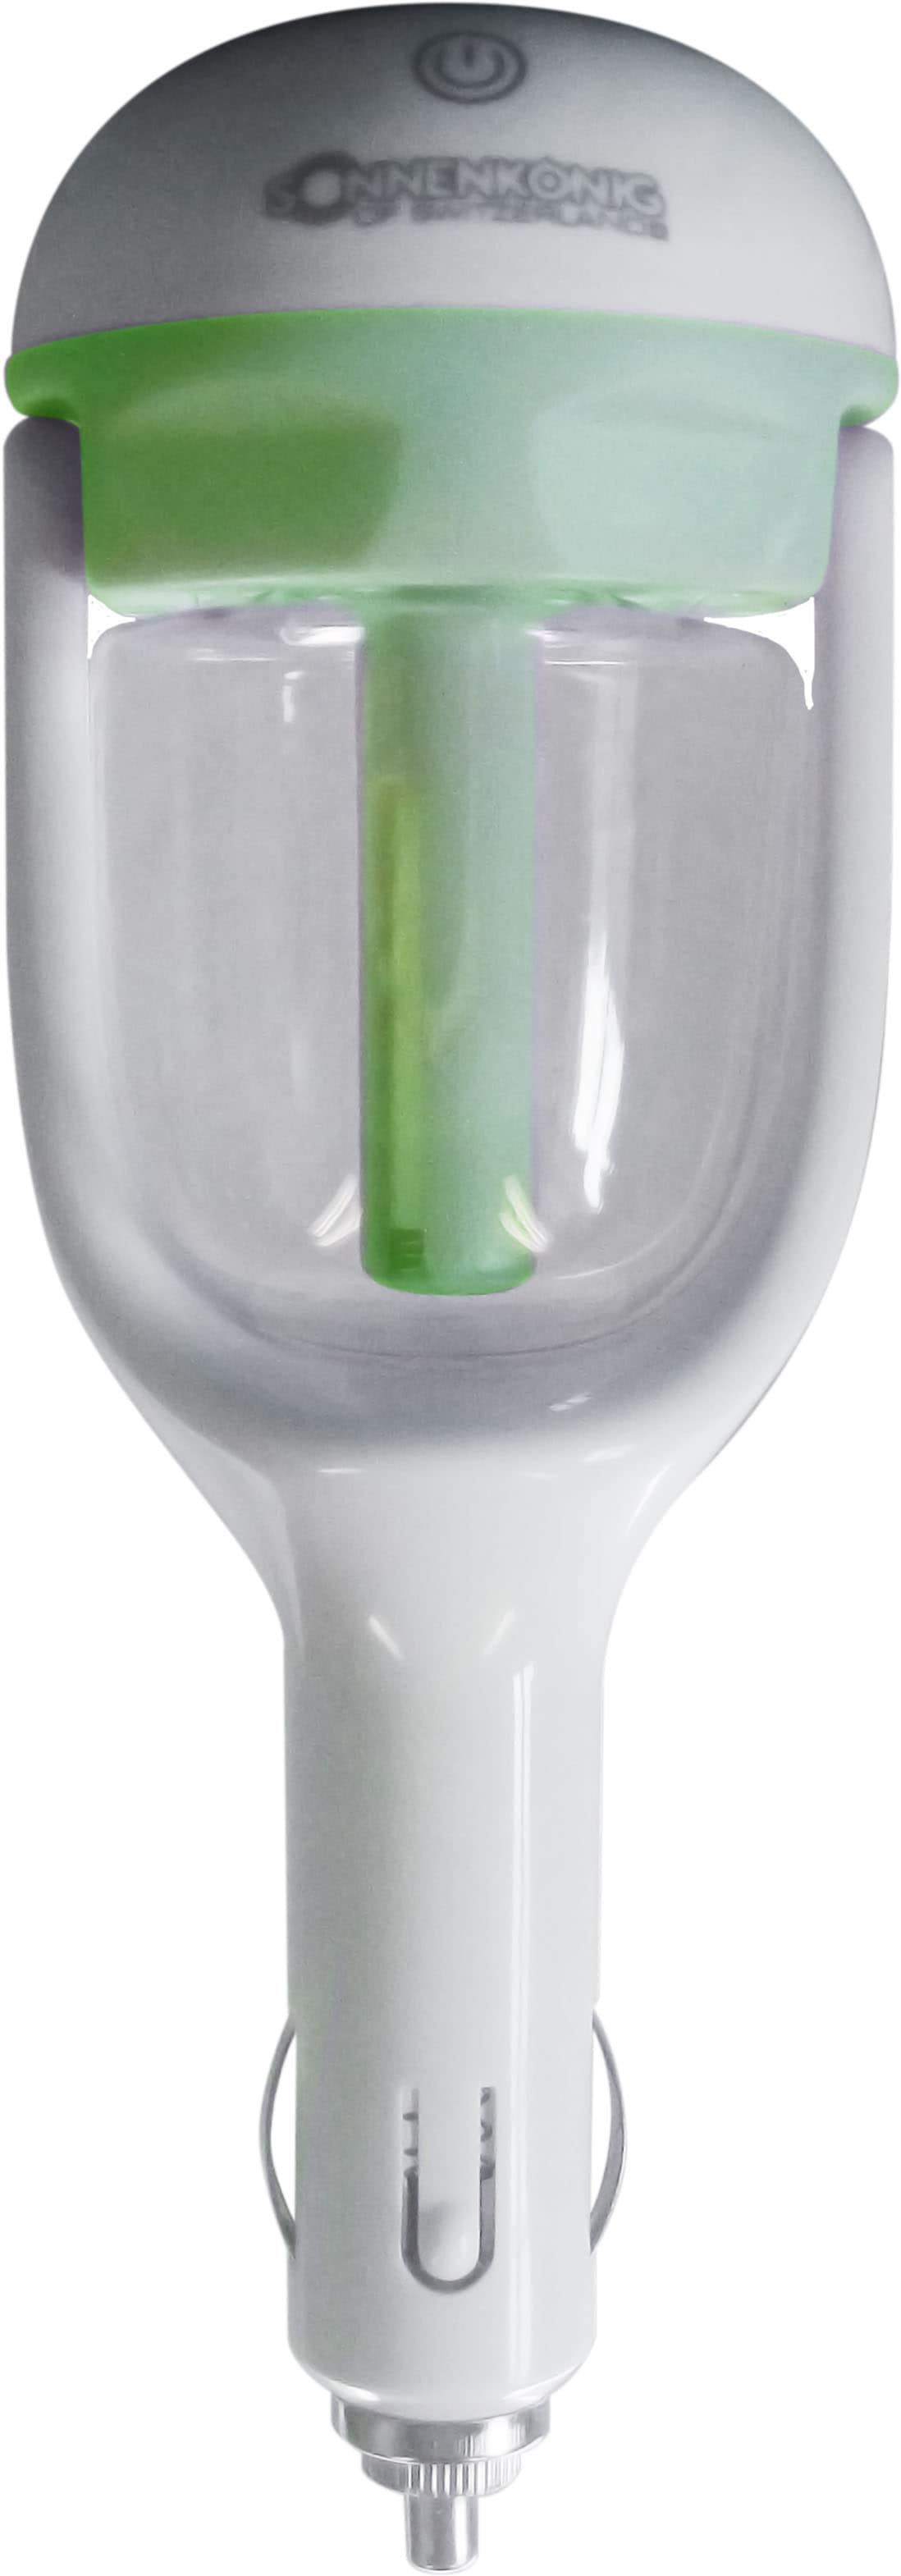 Sonnenkönig Luftbefeuchter »Freshcar grün«, 0,05 l Wassertank